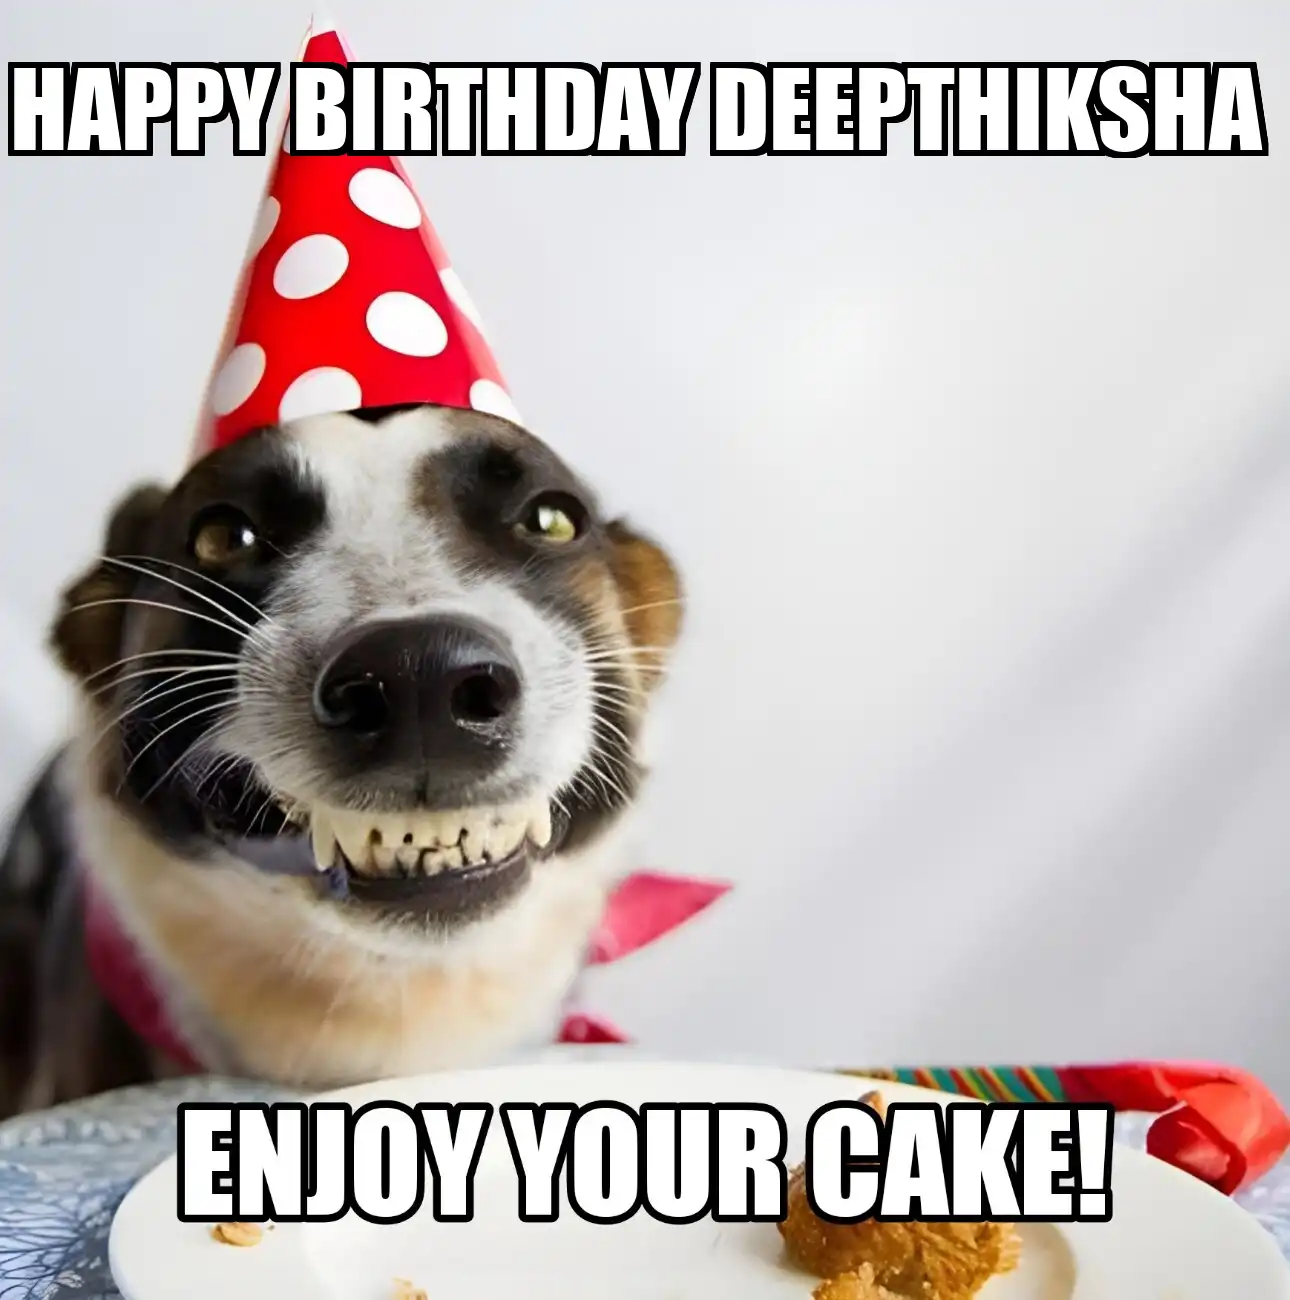 Happy Birthday Deepthiksha Enjoy Your Cake Dog Meme